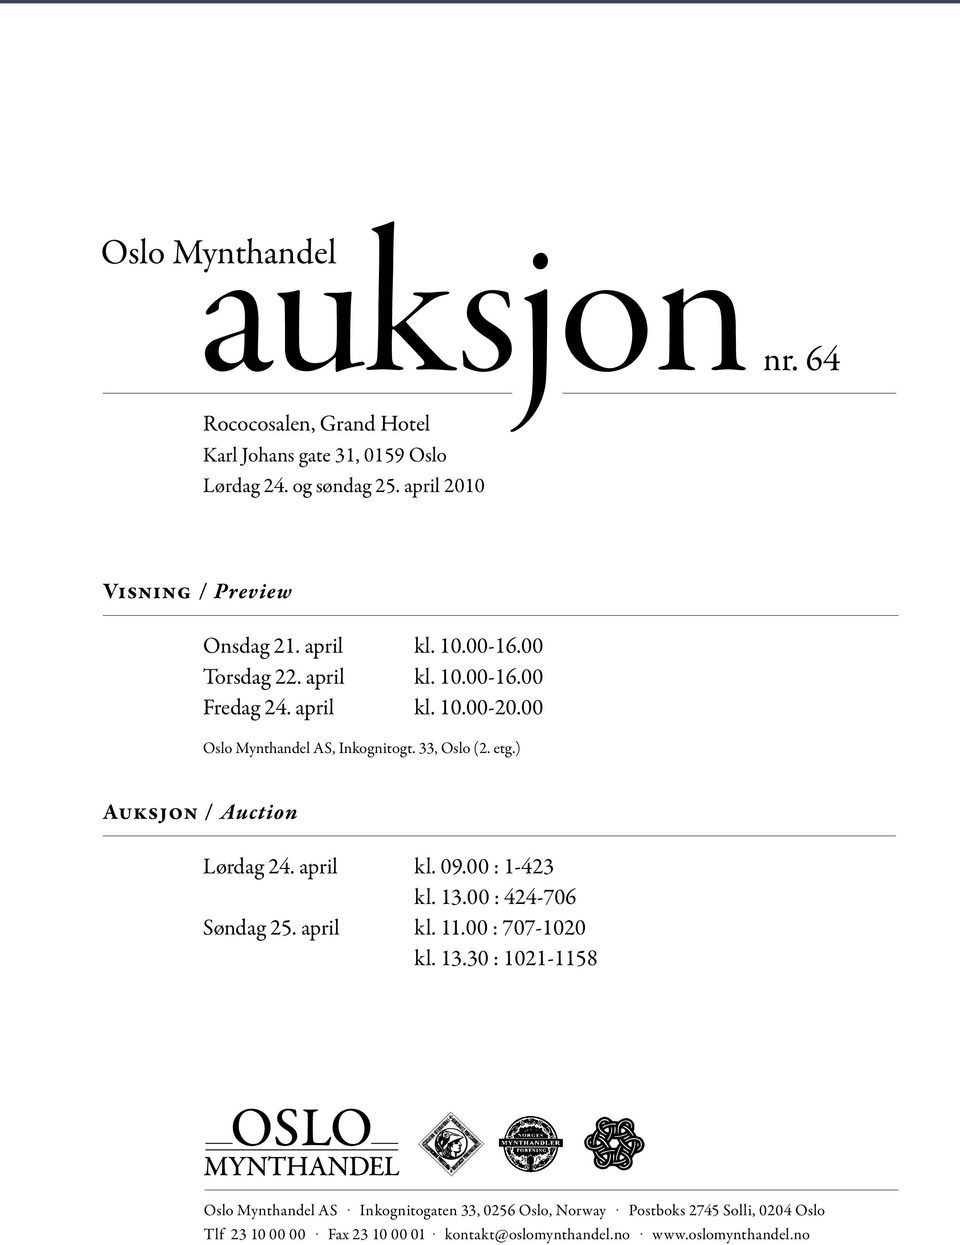 00 Oslo Mynthandel AS, Inkognitogt. 33, Oslo (2. etg.) Auksjon / Auction Lørdag 24. april kl. 09.00 : 1-423 kl. 13.00 : 424-706 Søndag 25. april kl. 11.